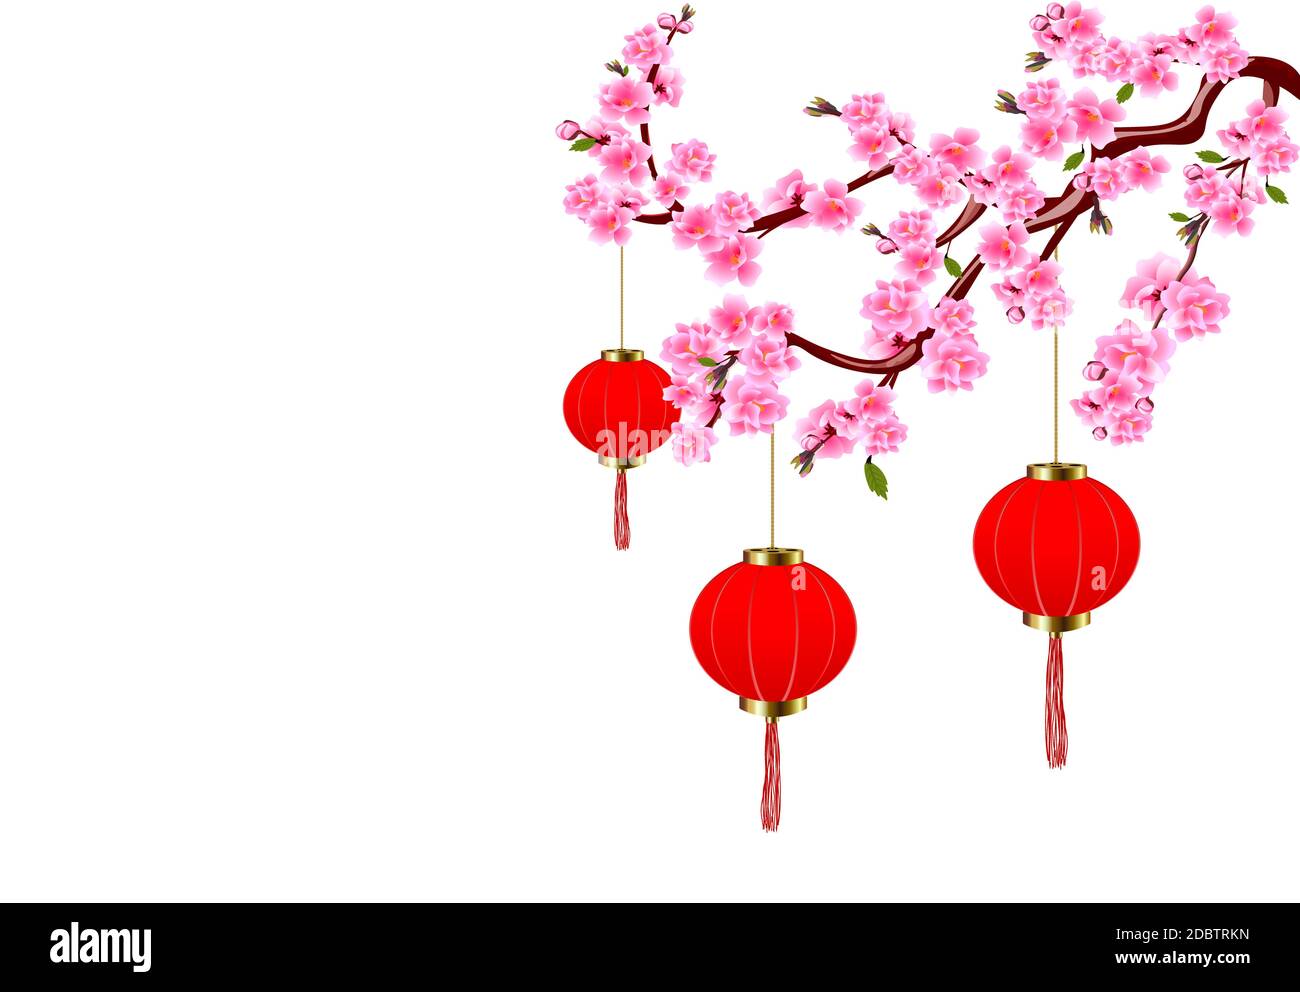 Chinesisches Neujahr. Sakura und rote Lichter. Kirschblüten mit Knospen und Blättern auf dem Ast. Vektorgrafik Stockfoto